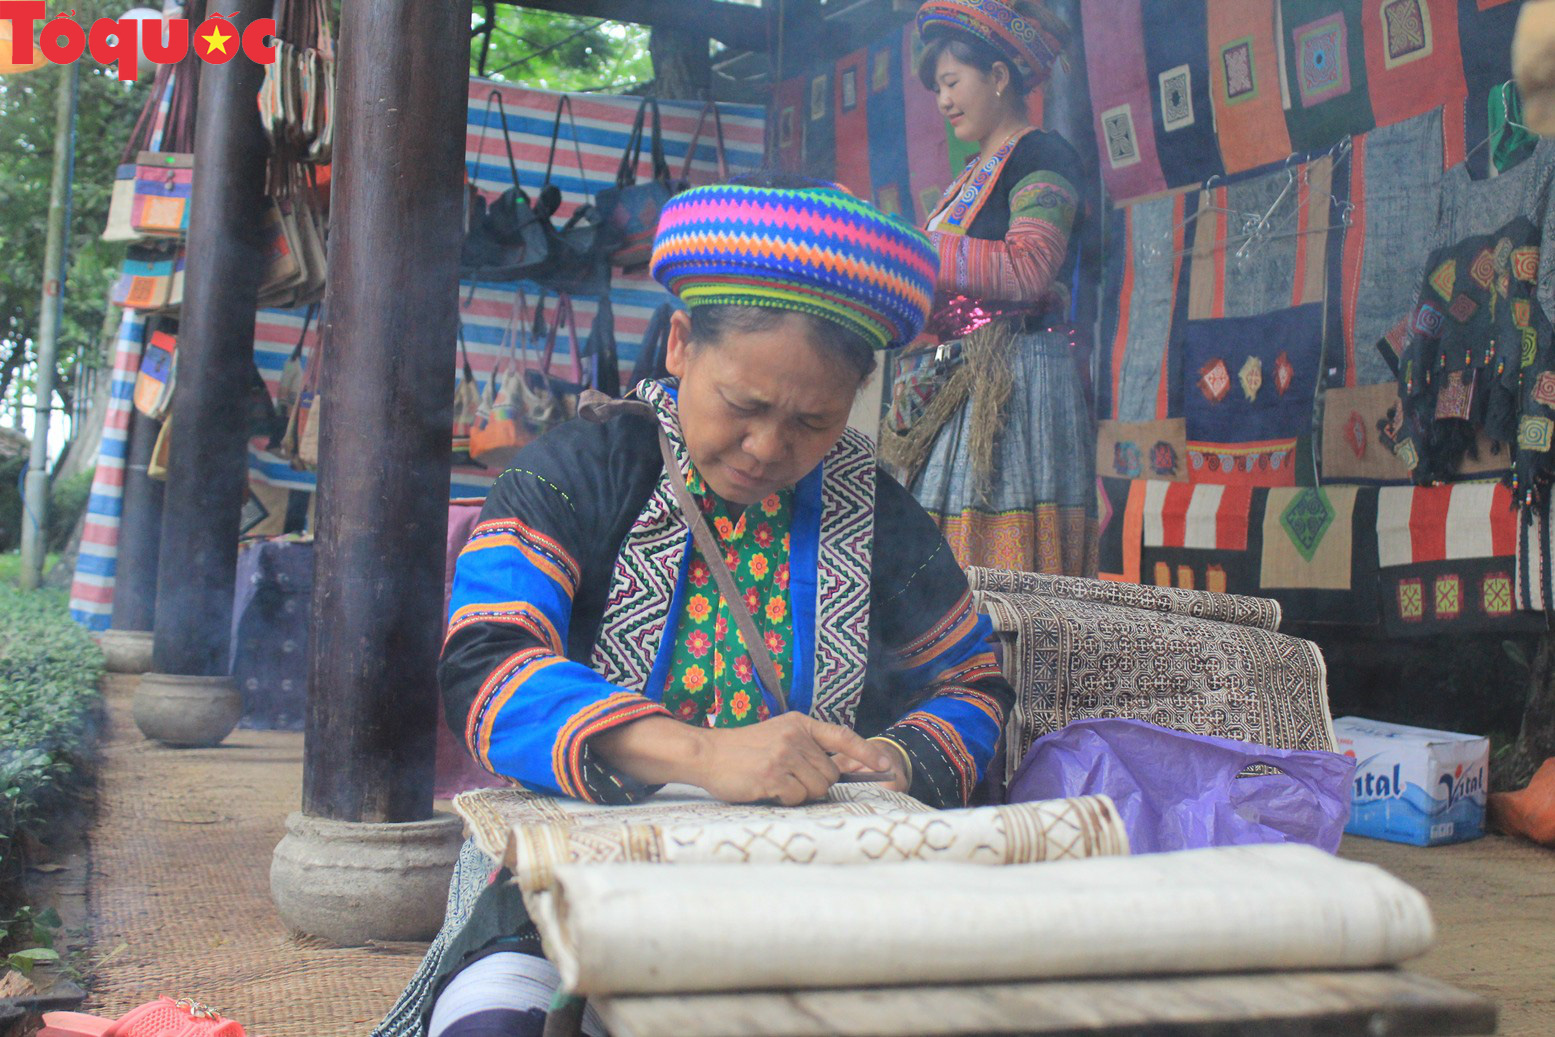 Festival nghề truyền thống Huế ngày càng thu hút các thành phố trên thế giới - Ảnh 1.